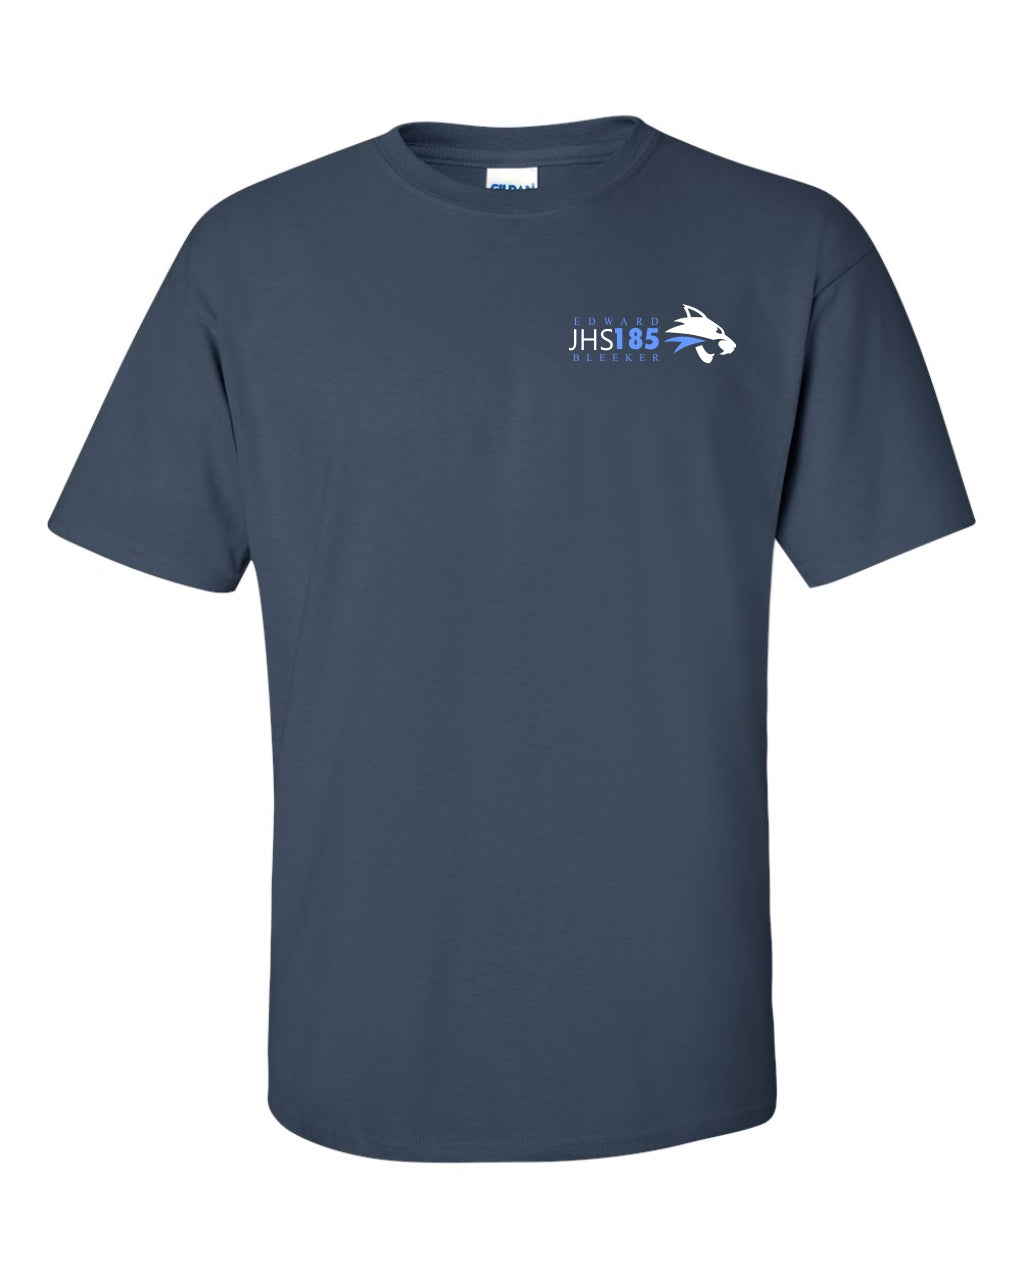 JHS185-Edward Bleeker Navy 100% cotton t-shirt